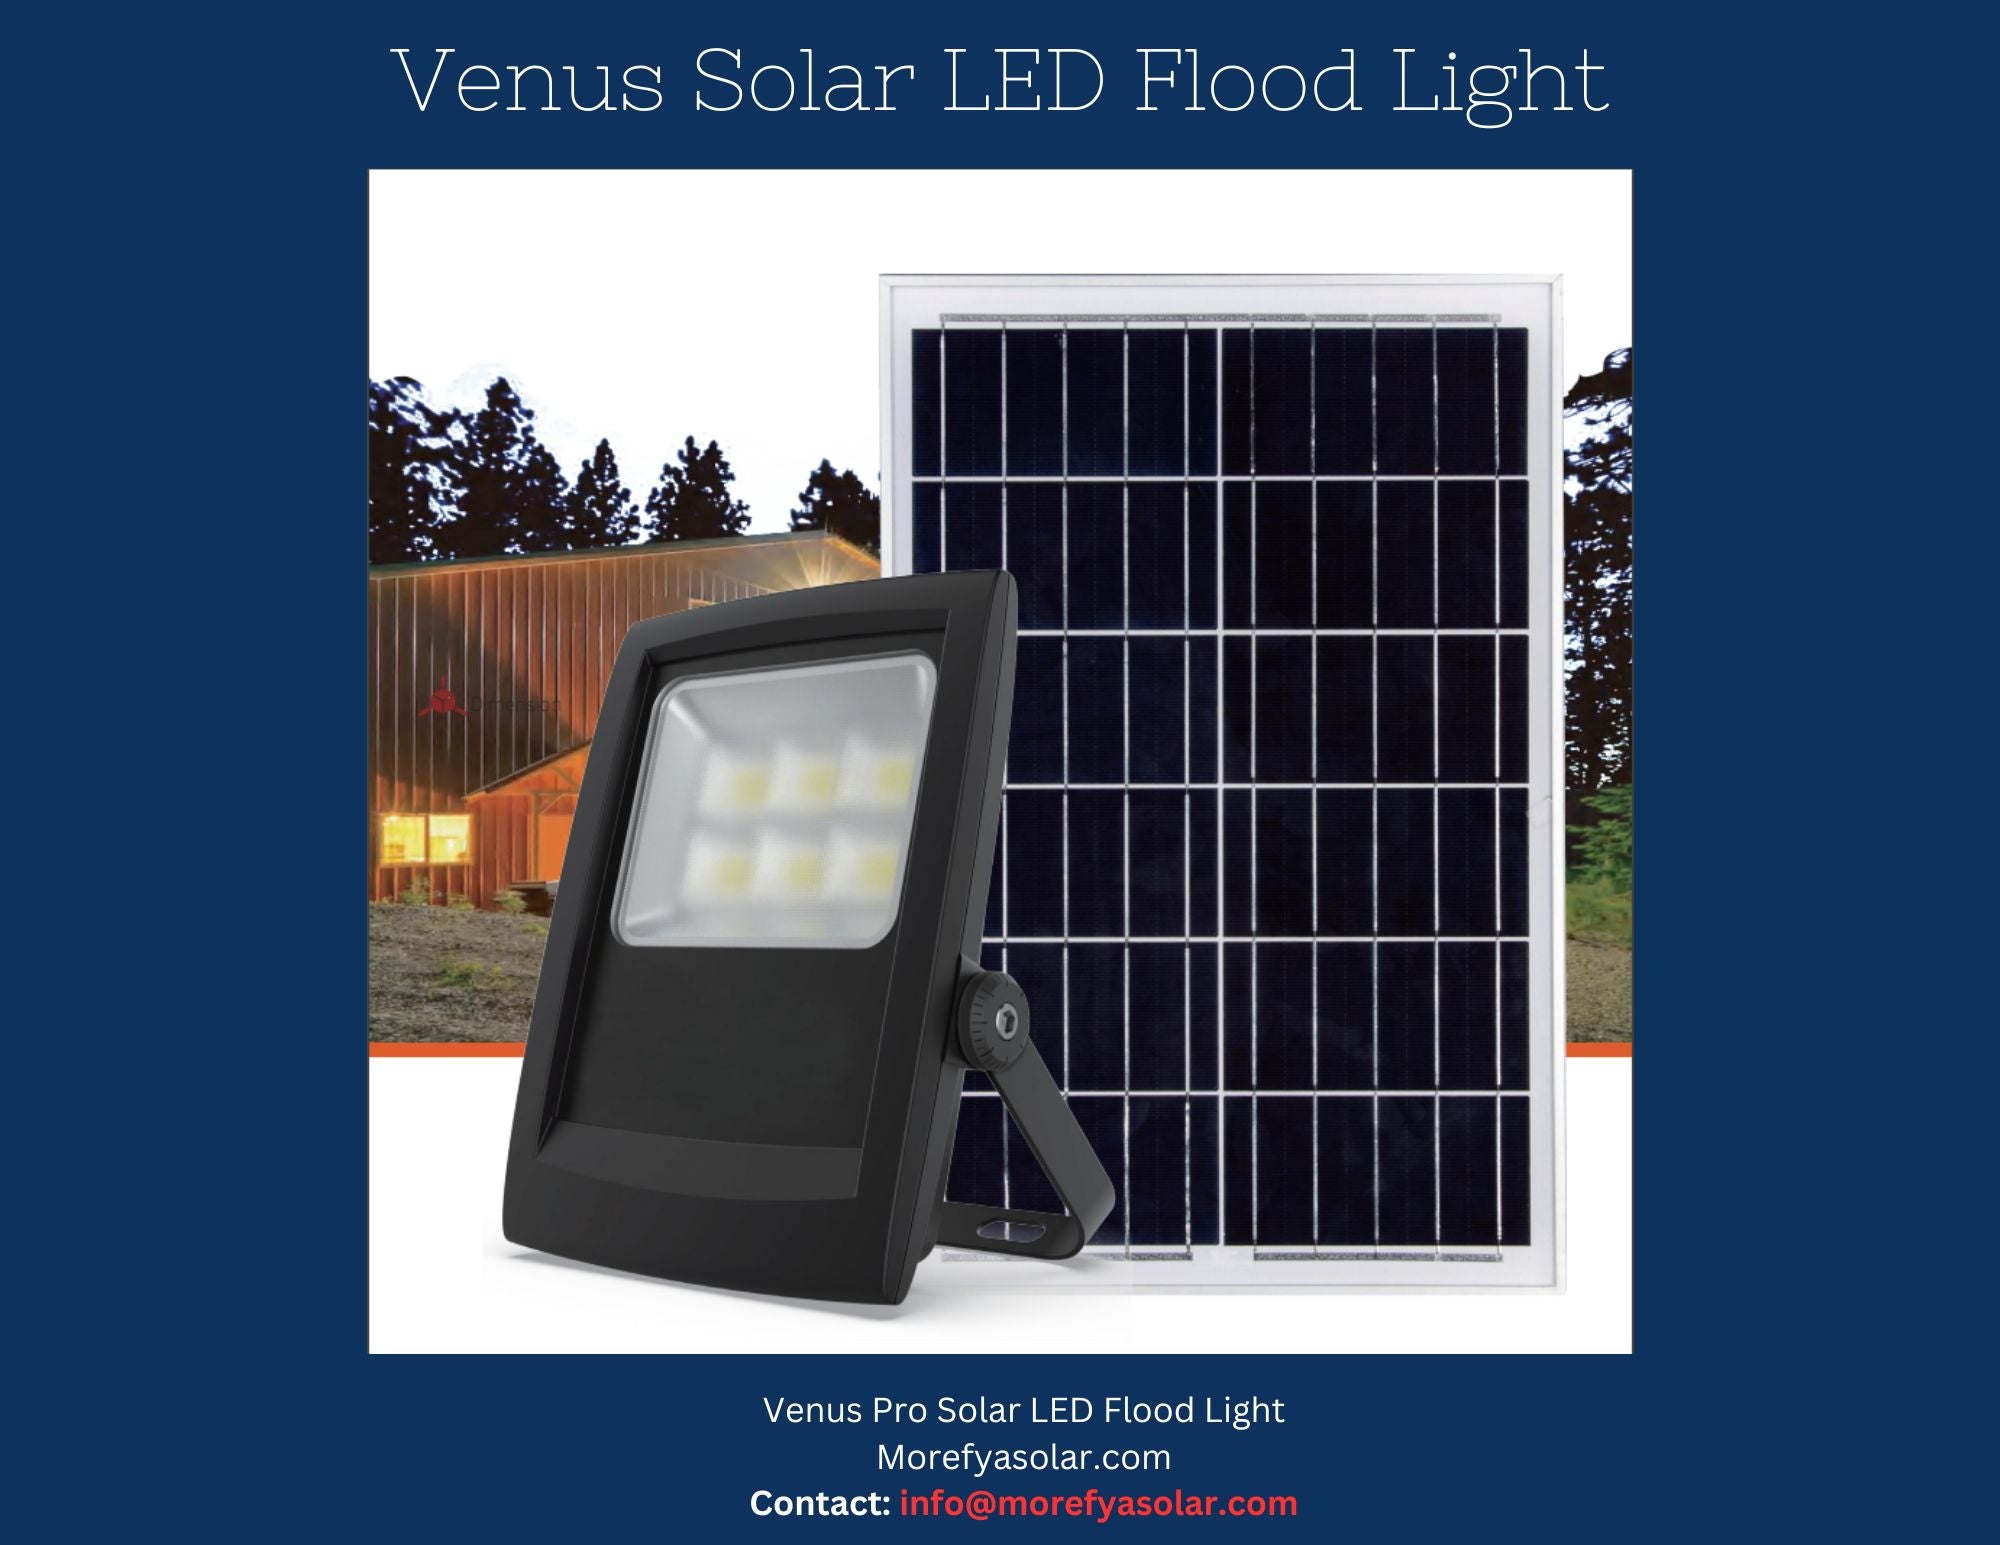 Venus V6 Pro Solar LED Flood Light